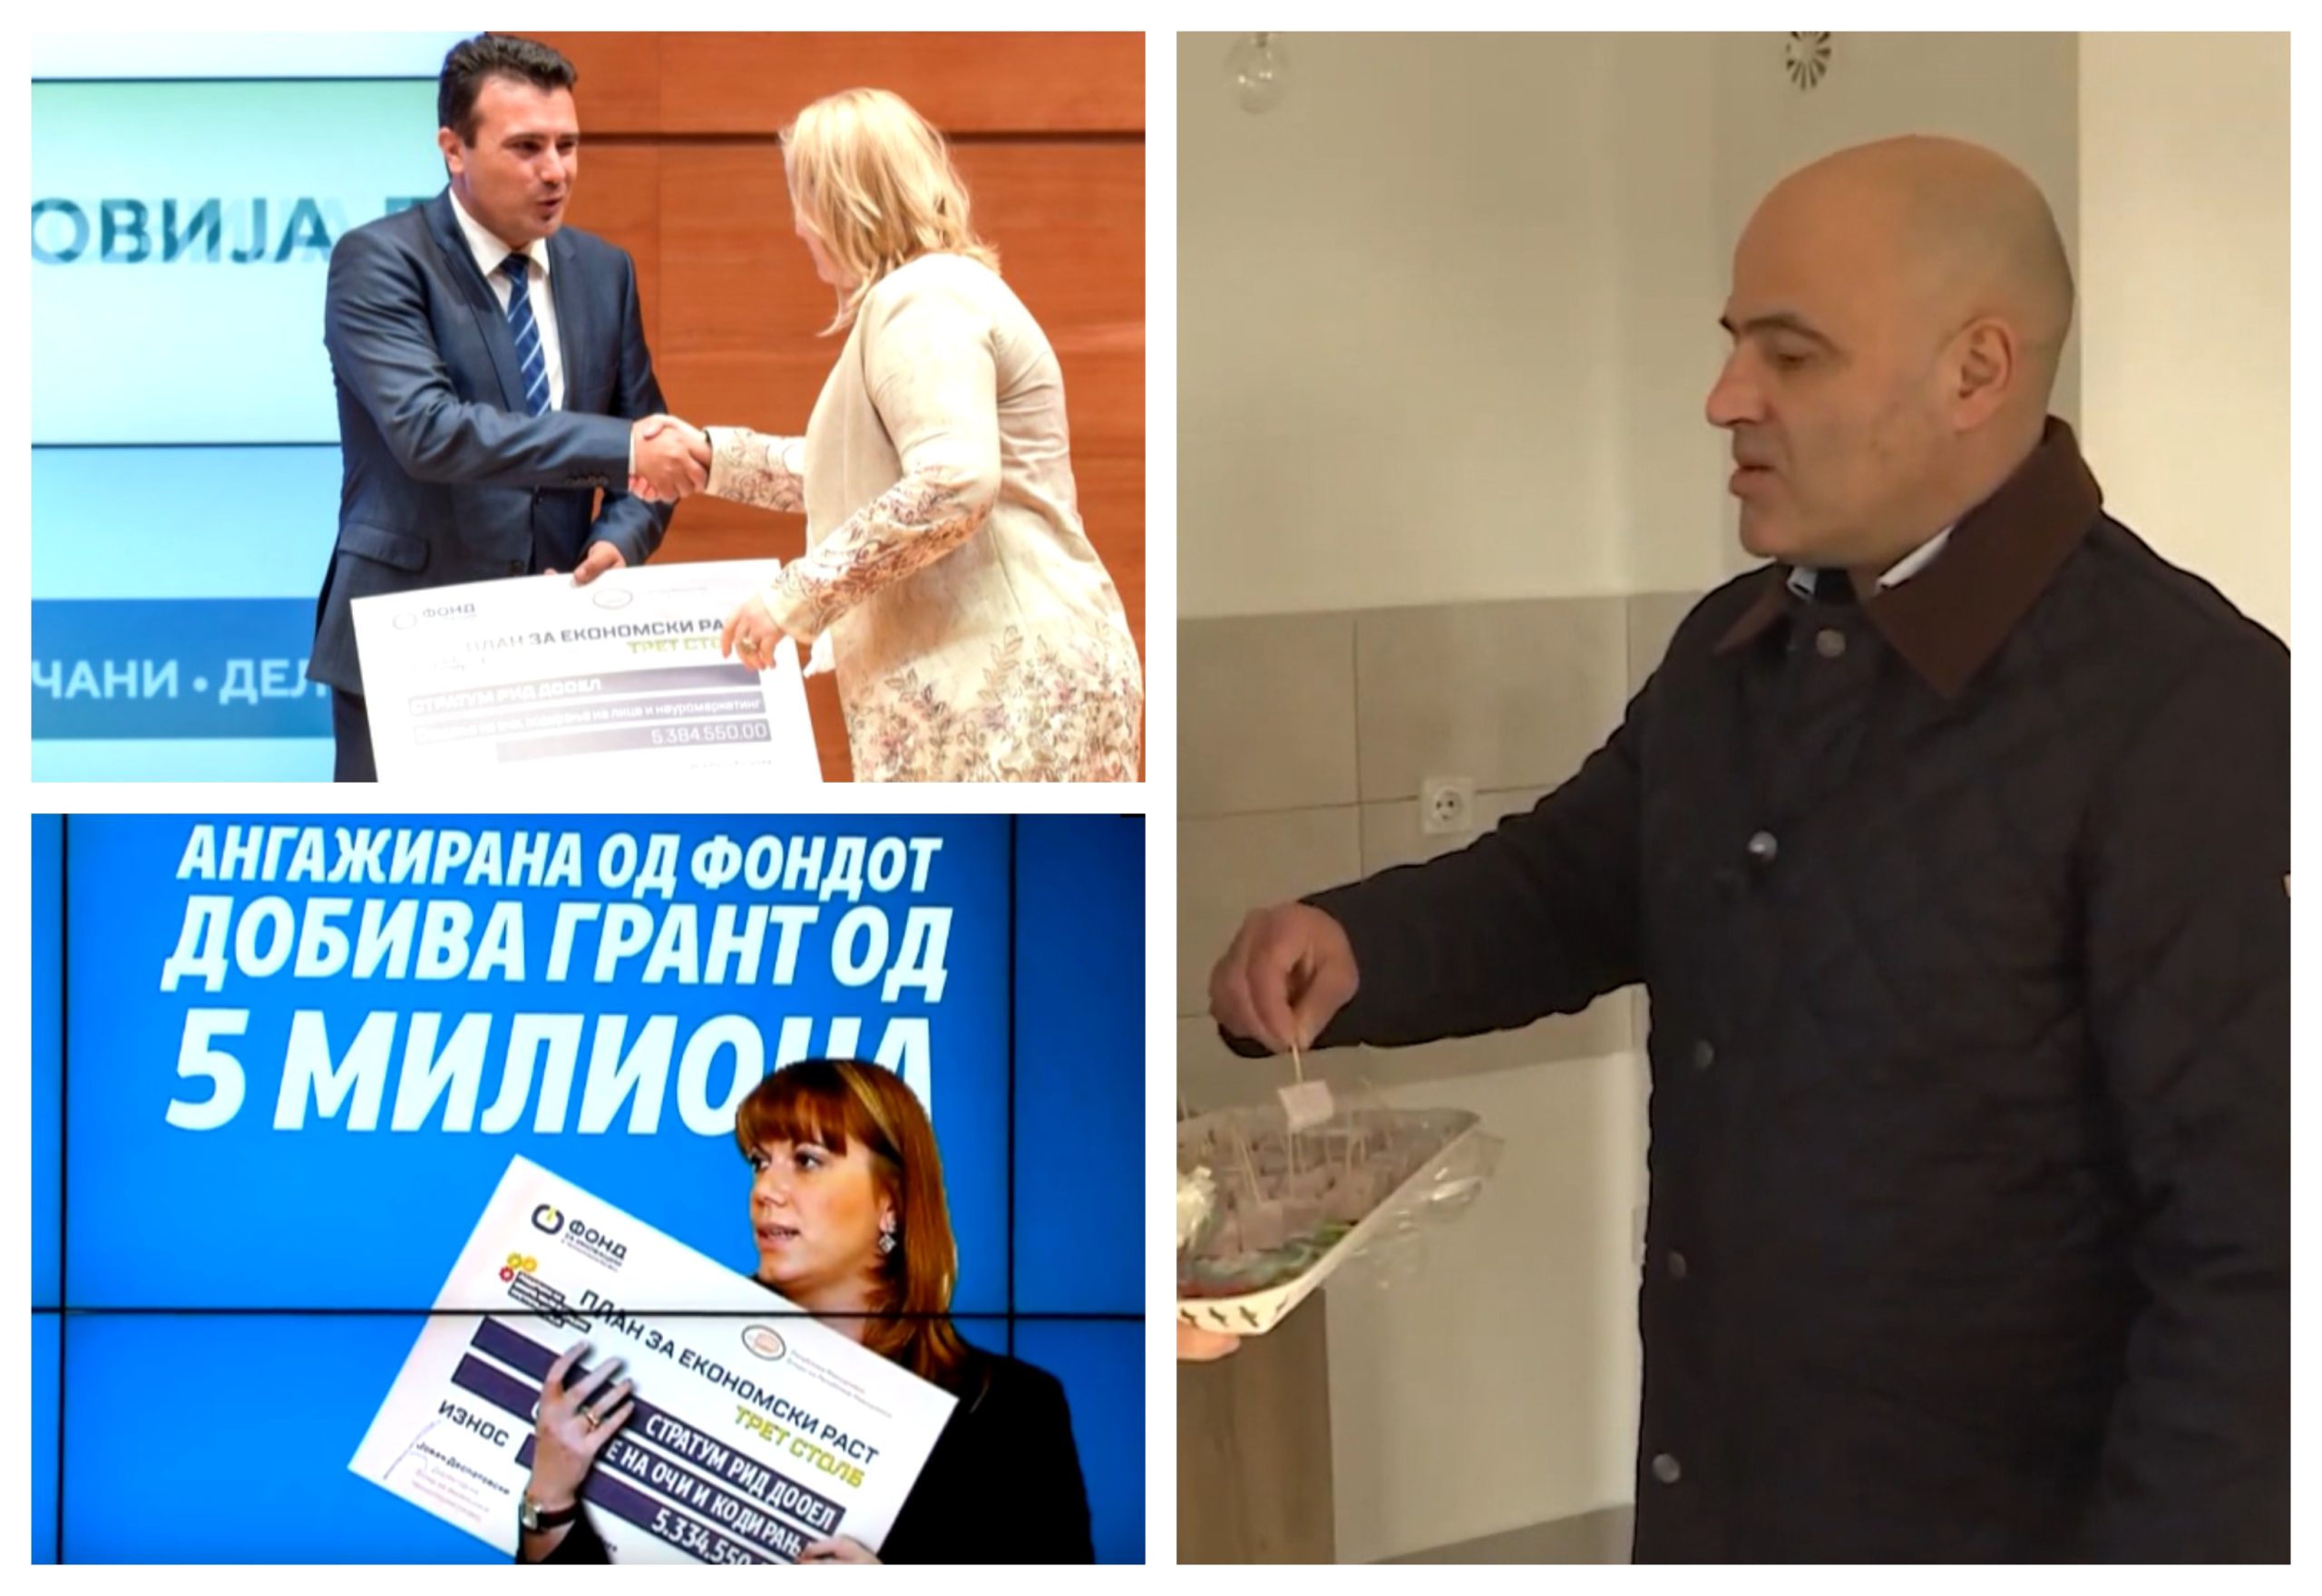 Се местат и се штимаат анкети во корист на власта- на Ковачевски му гори под нозе на шест месеци пред избори?!